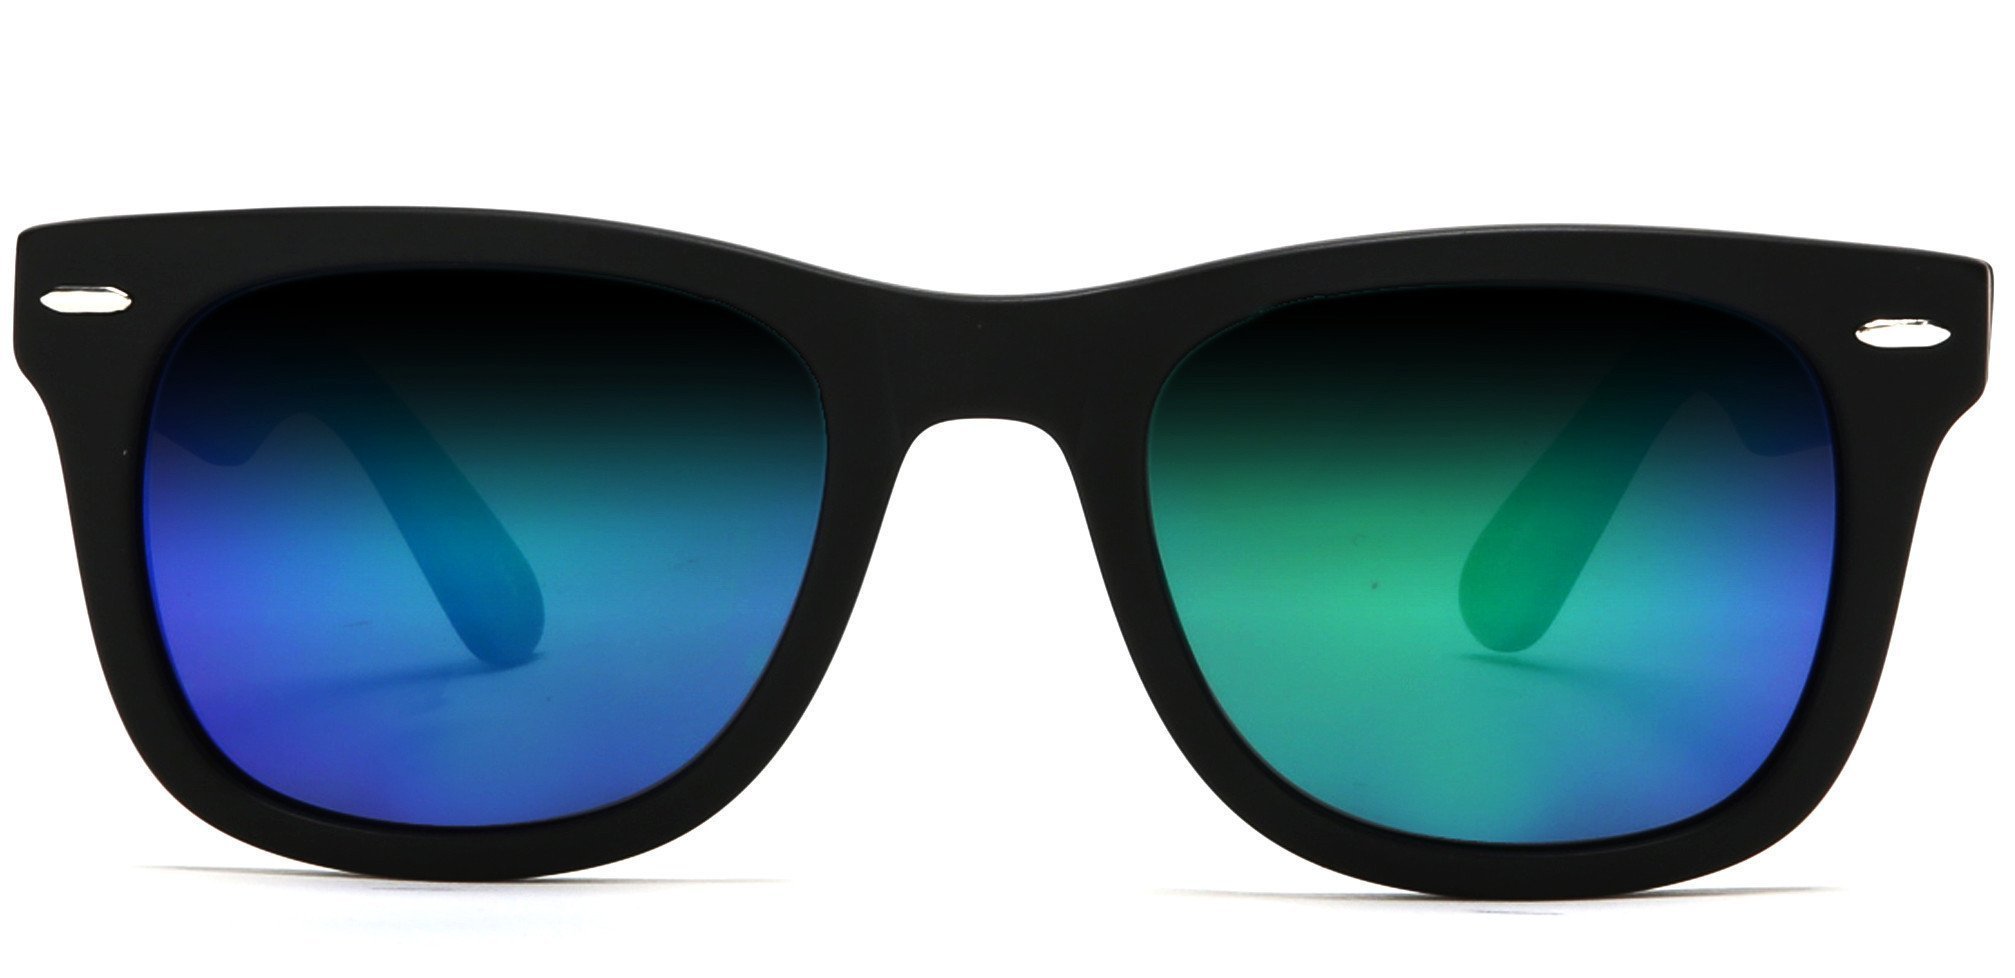 Verona Polarized Horn Rimmed Sunglasses Black-Samba Shades